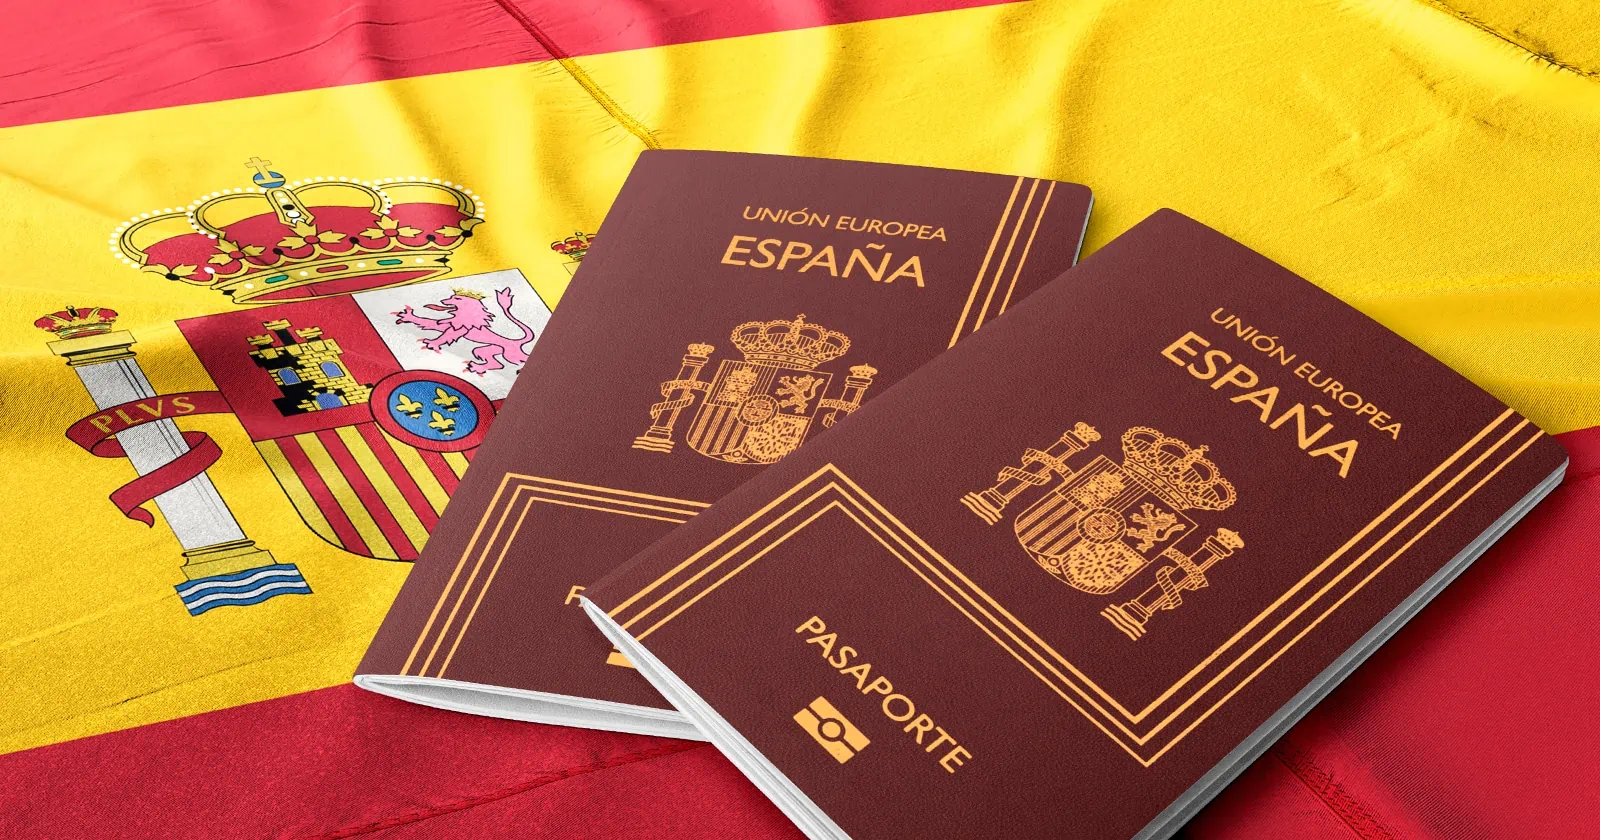 Nuevo Envío de Pasaportes Españoles: Mira las Fechas y Provincias